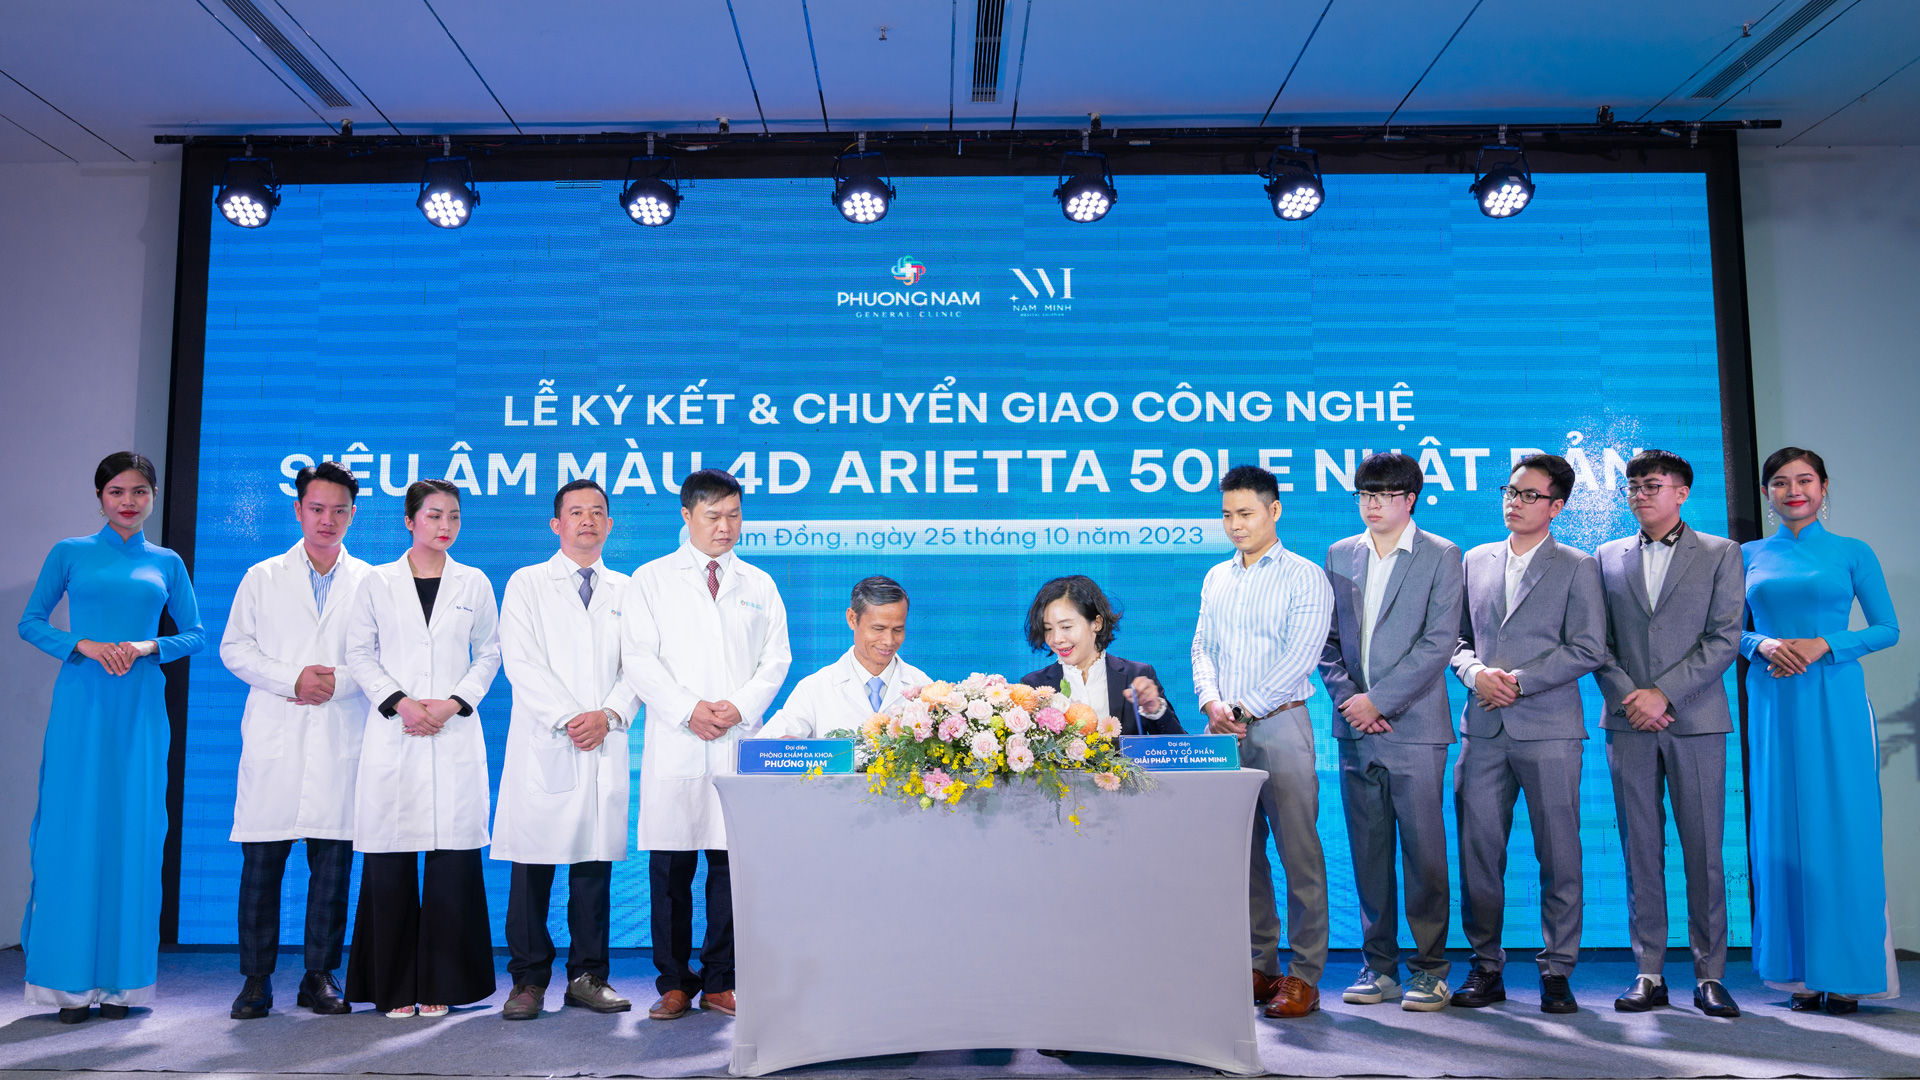 Đa khoa Phương Nam và Nam Minh Medical chính thức ký kết chuyển giao công nghệ siêu âm màu 4D Arietta 50LE Nhật Bản